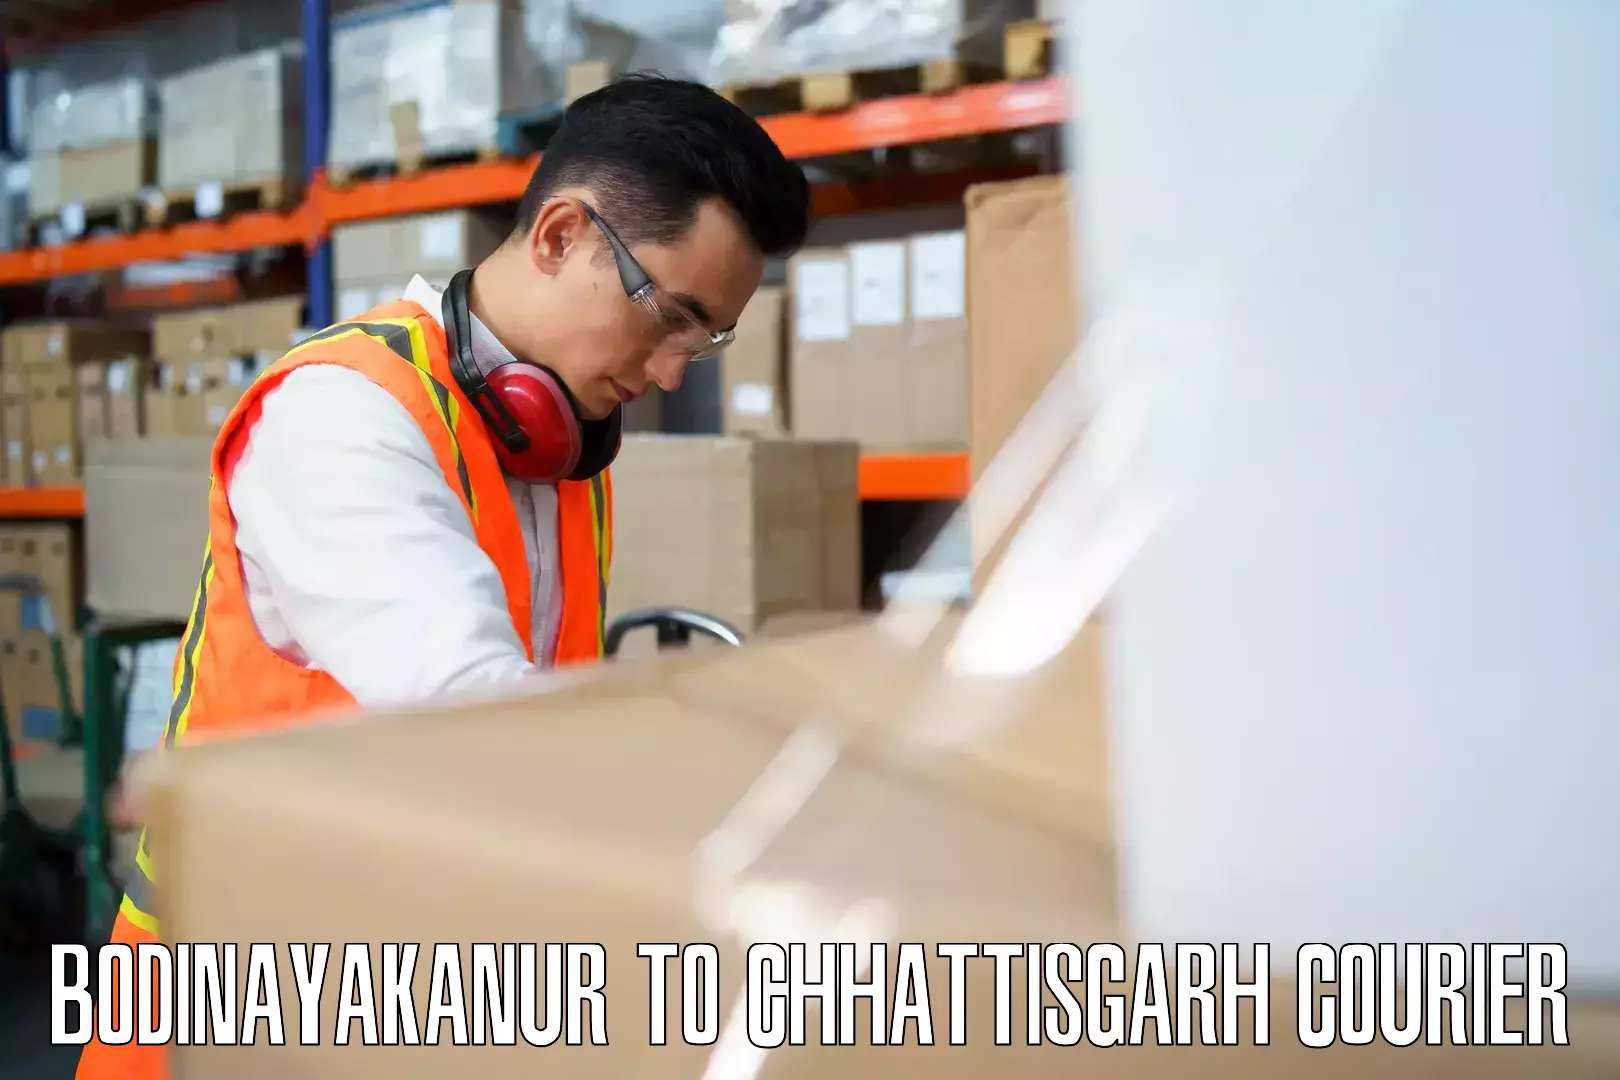 Expedited baggage courier Bodinayakanur to Raigarh Chhattisgarh